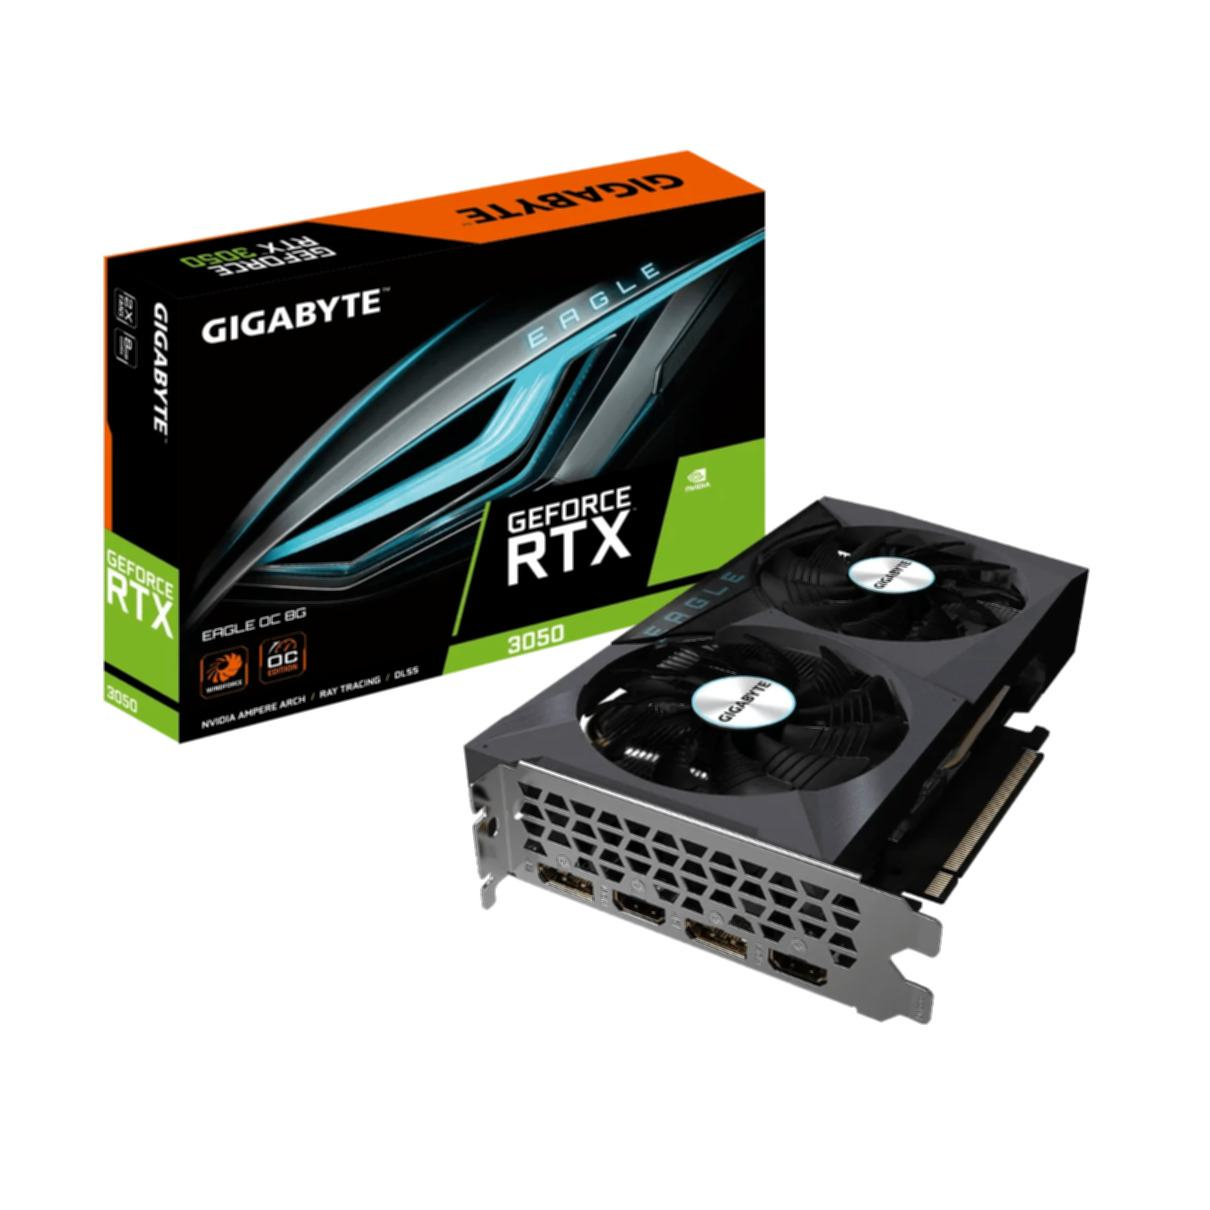 GIGABYTE GeForce RTX 3050 EAGLE 8G Grafikkarte) OC (NVIDIA